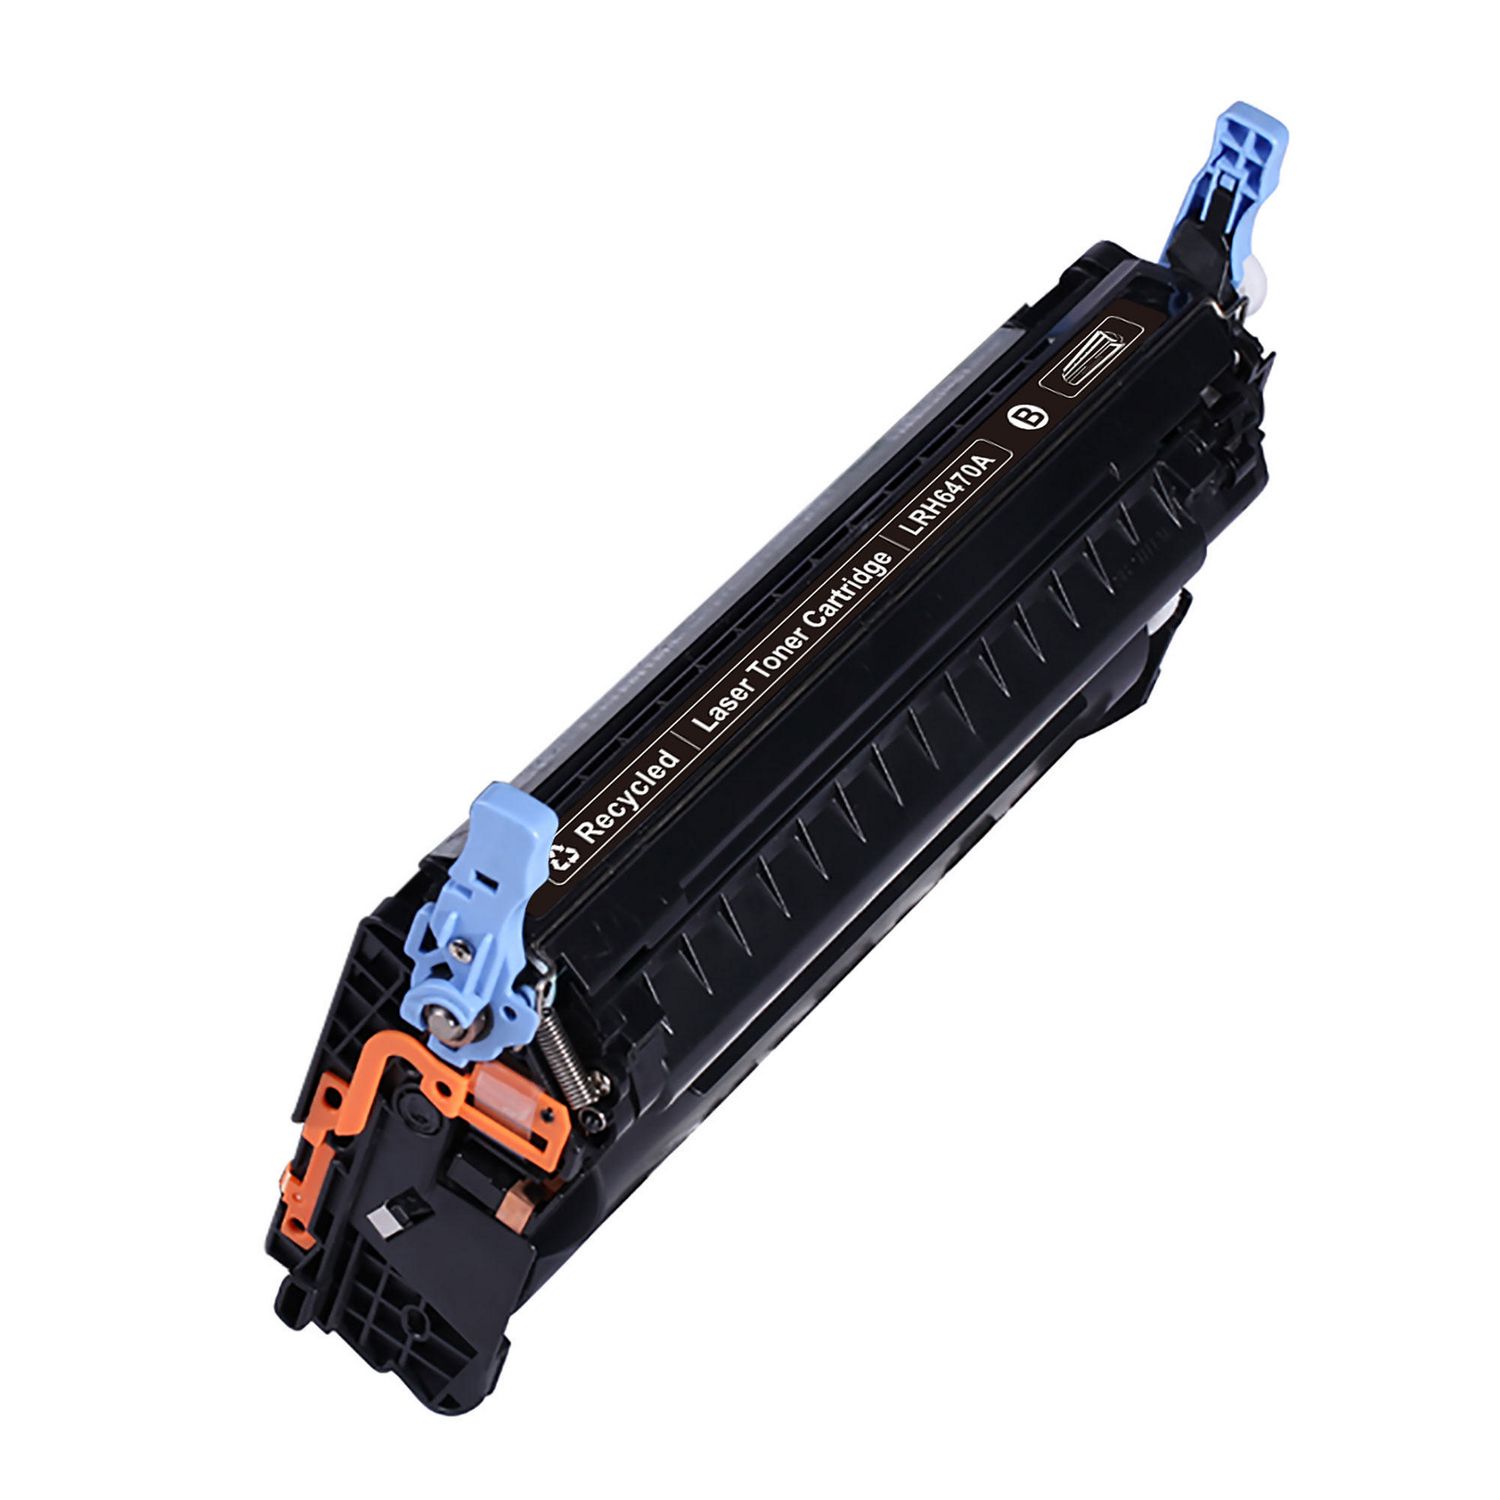 Toner Cartridge Compatible HP 501A (Q6470A) Black